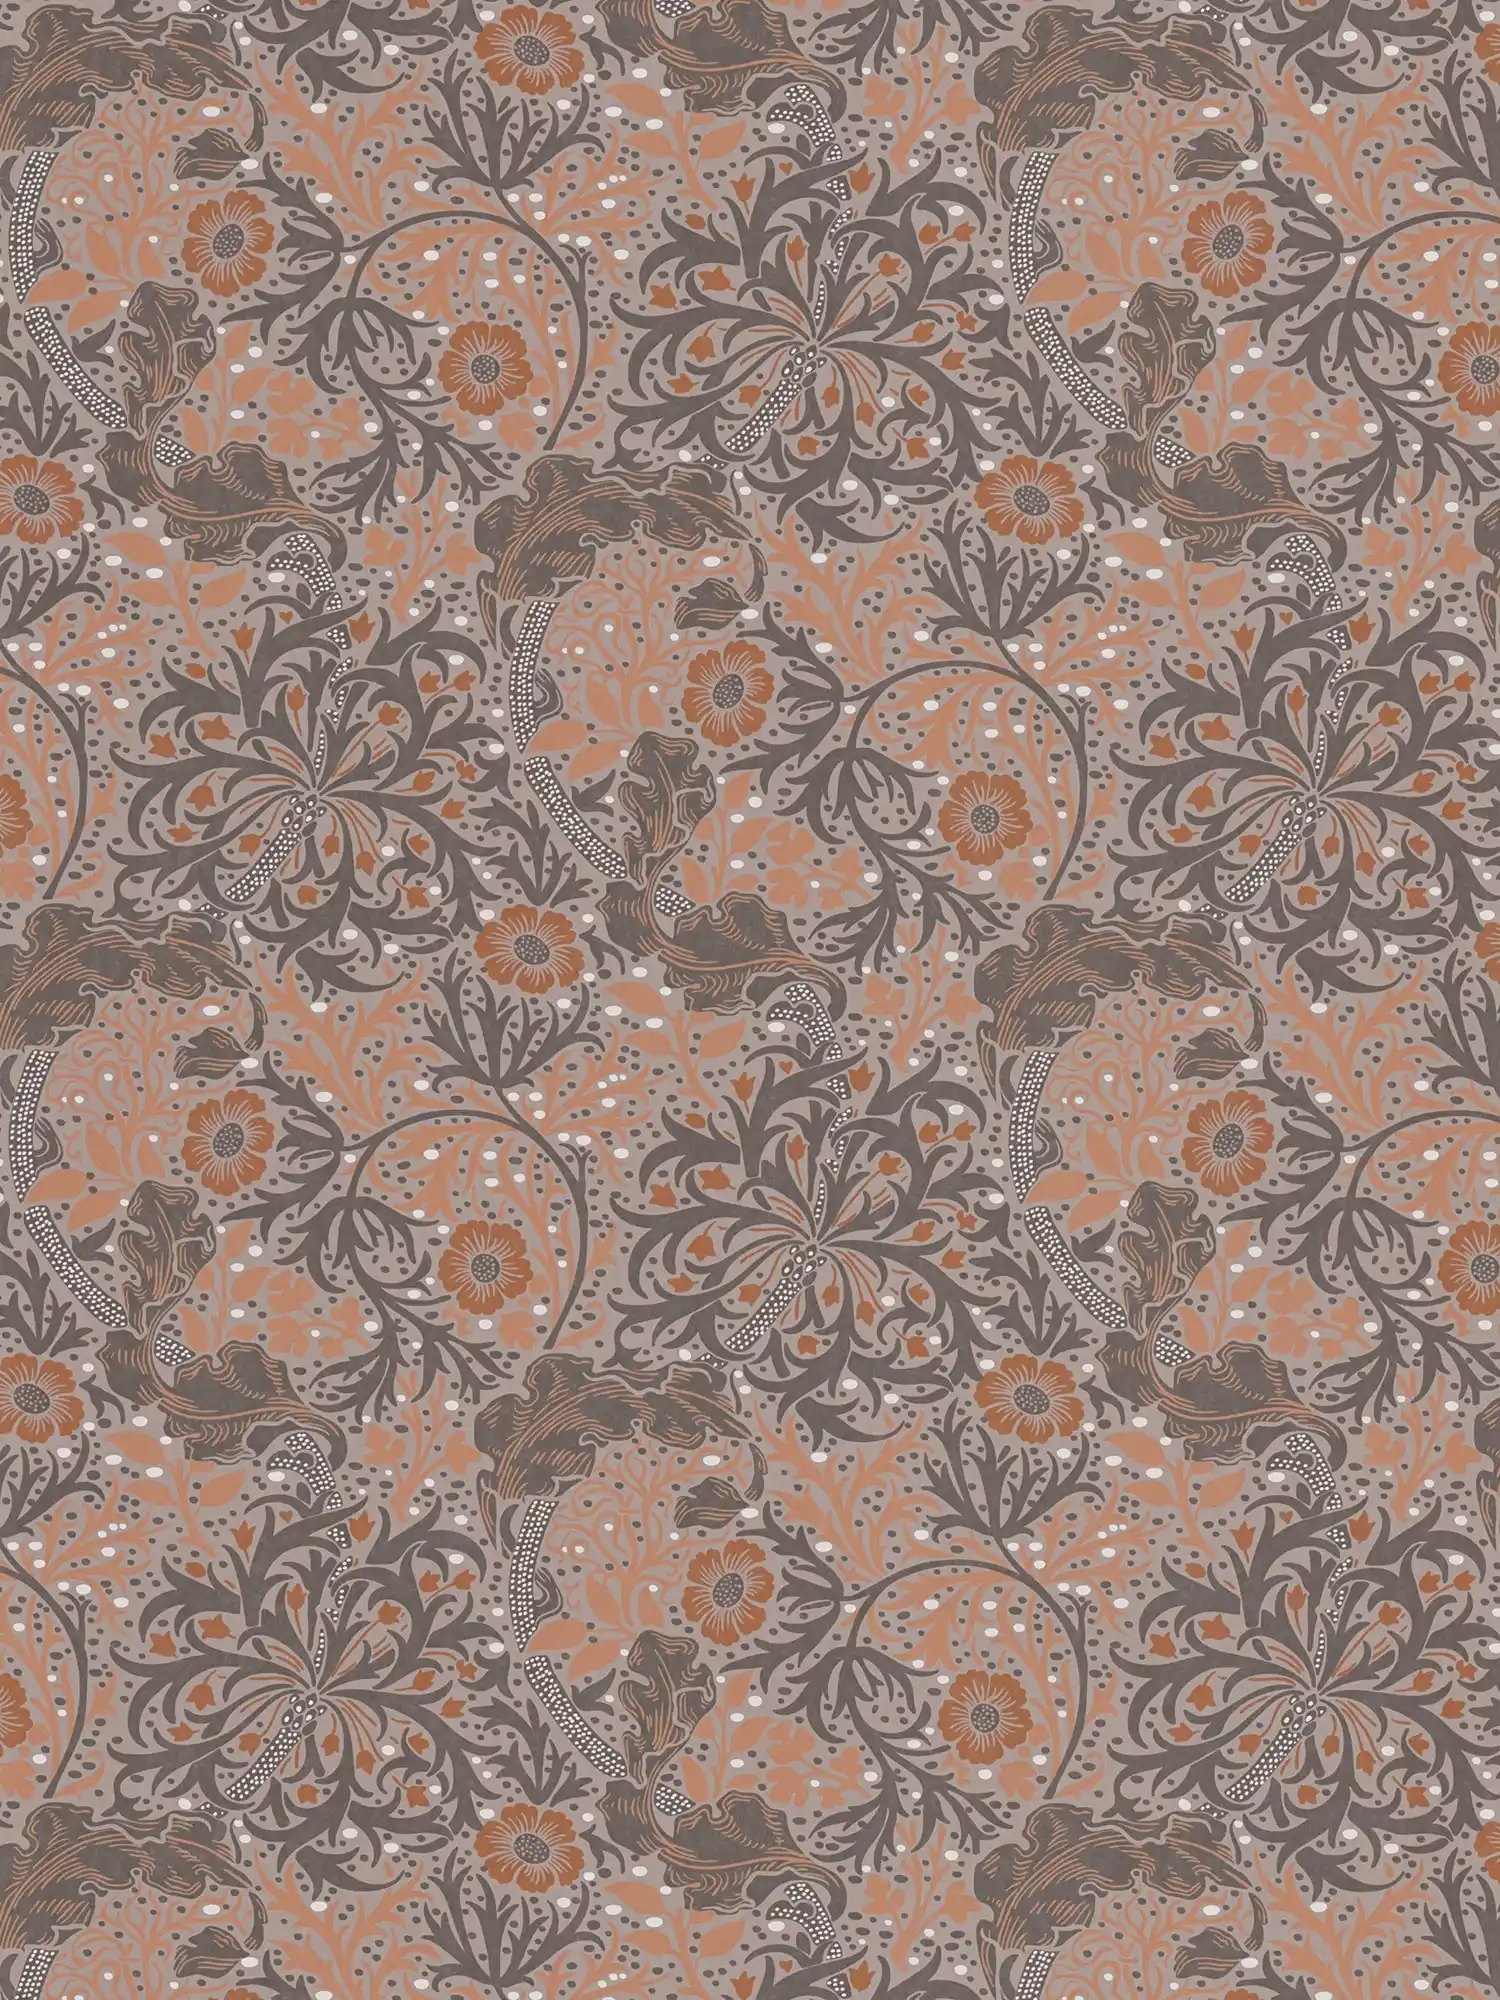 Tapete mit Blüten und Ranken floral & gepunktet – orange, Grau, Schwarz
